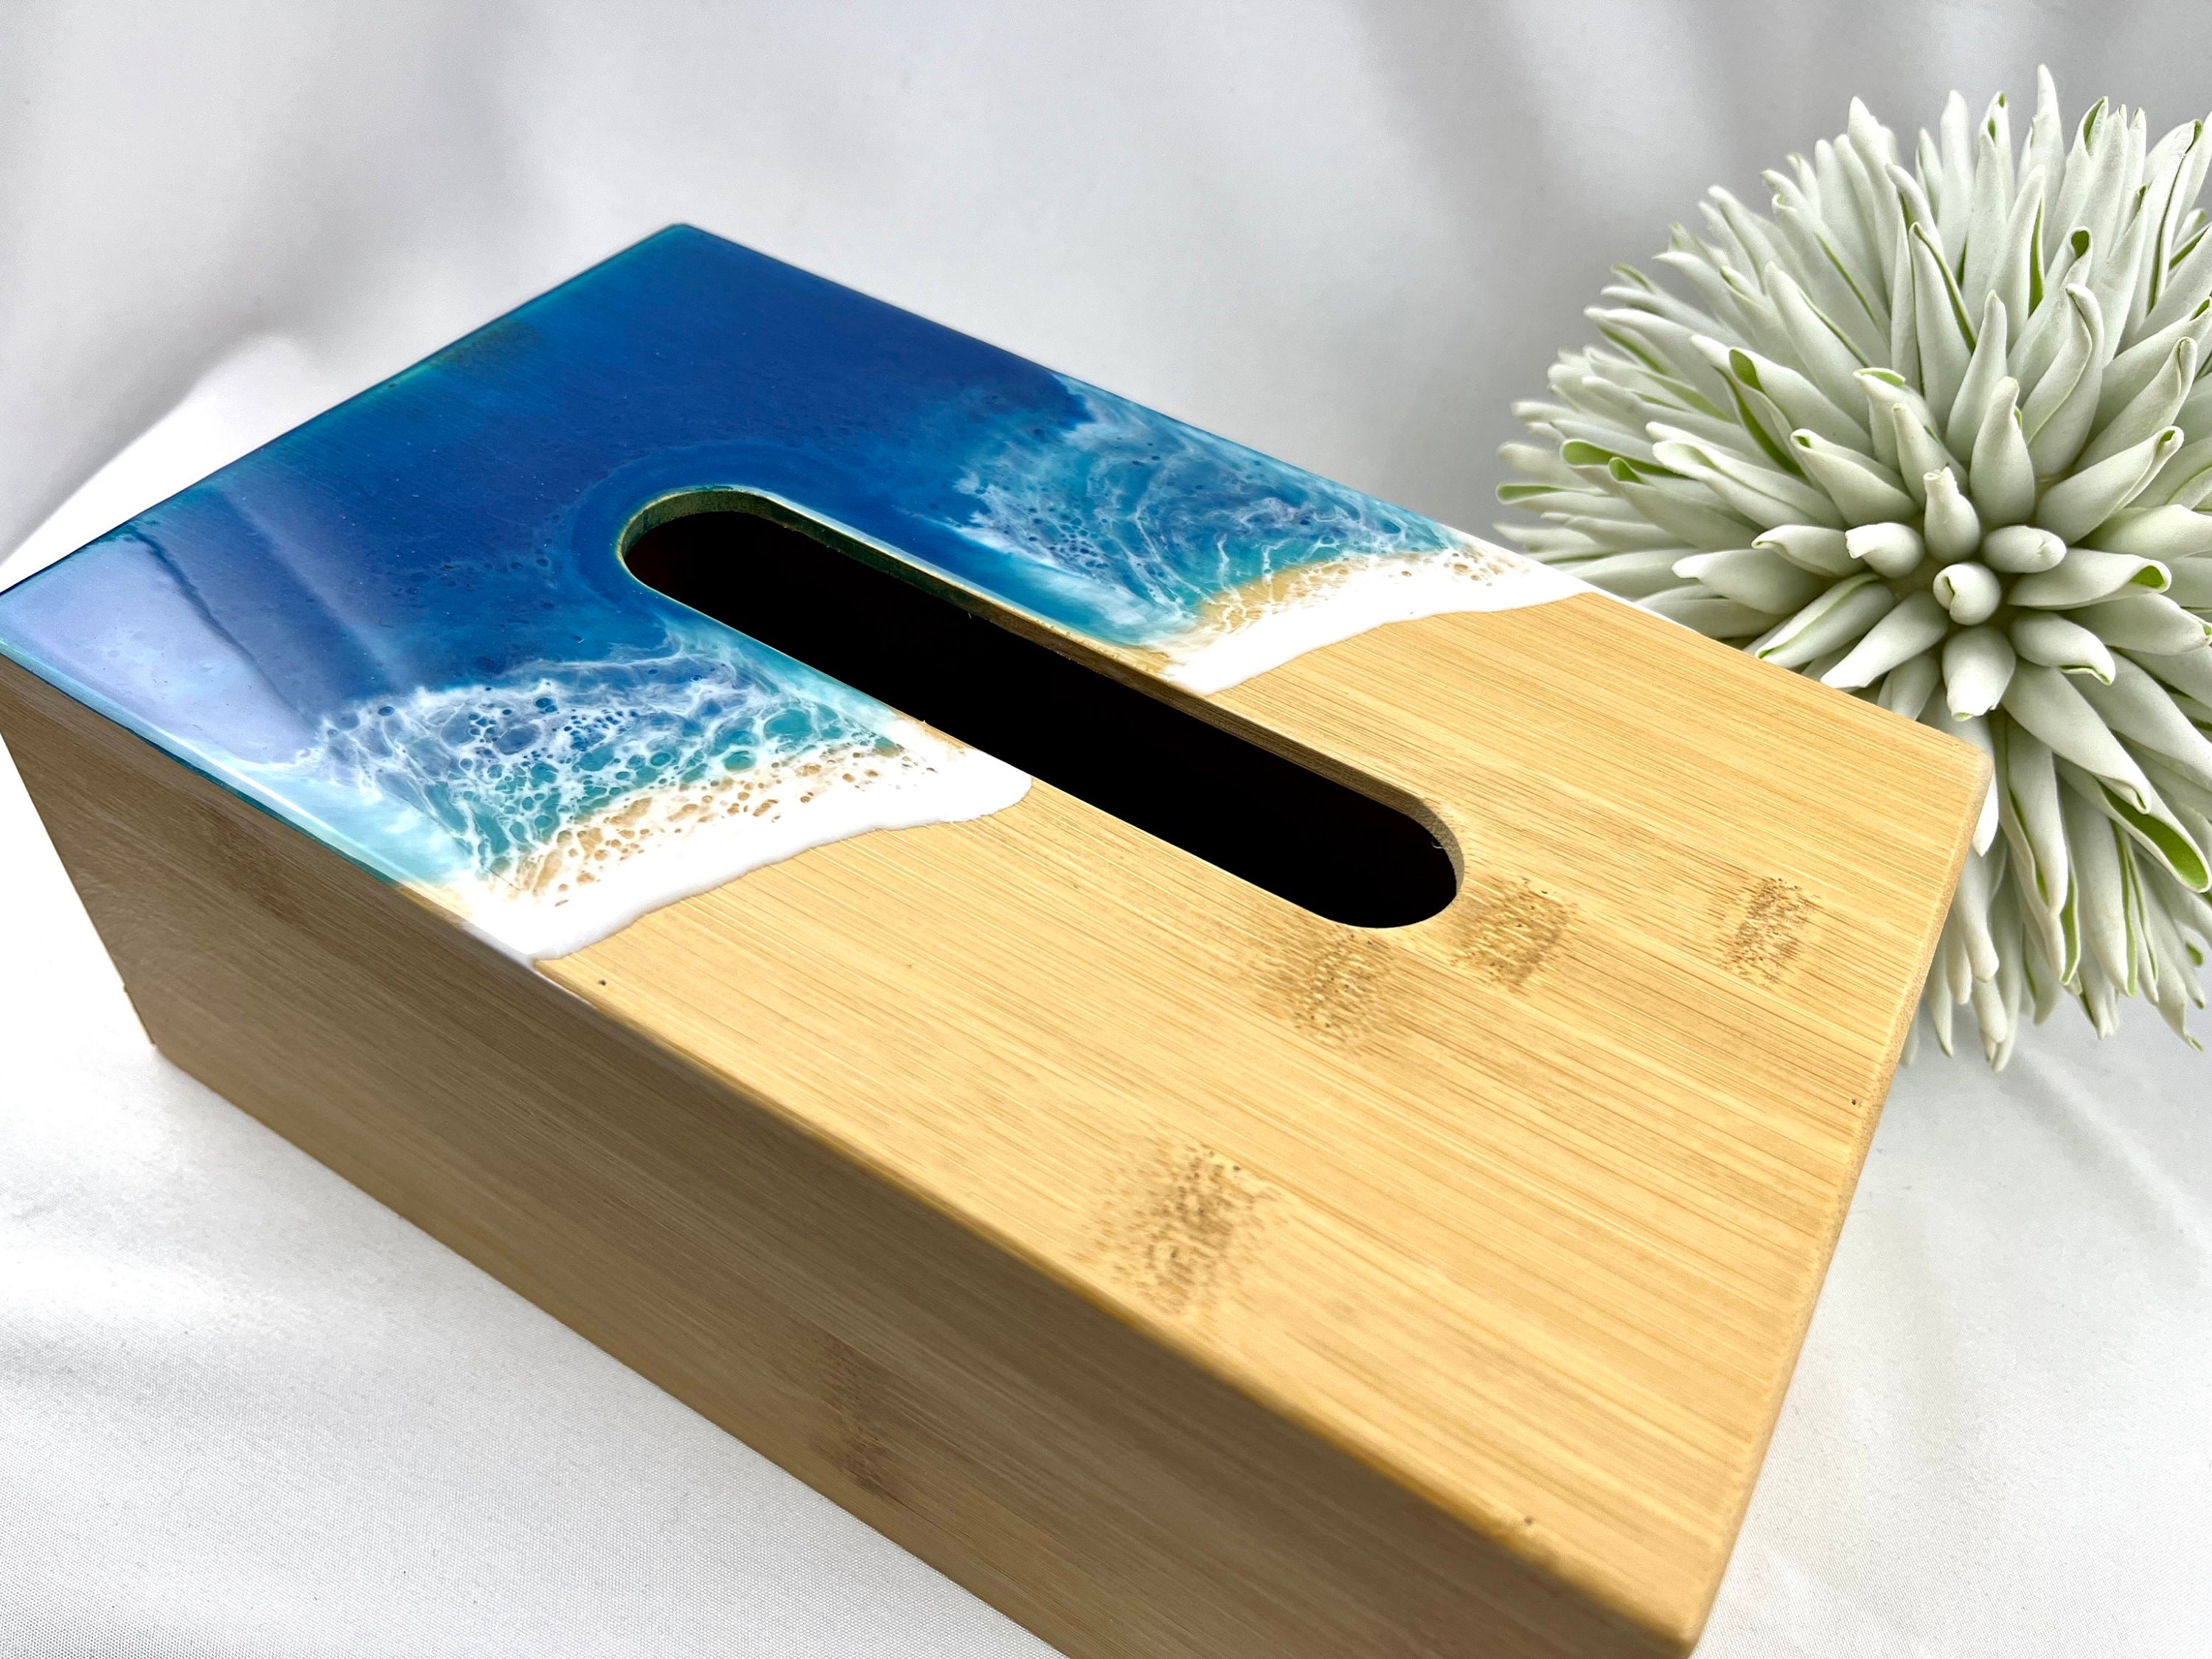 Taschentuchbox aus Bambus mit Ihrer Wunschgravur